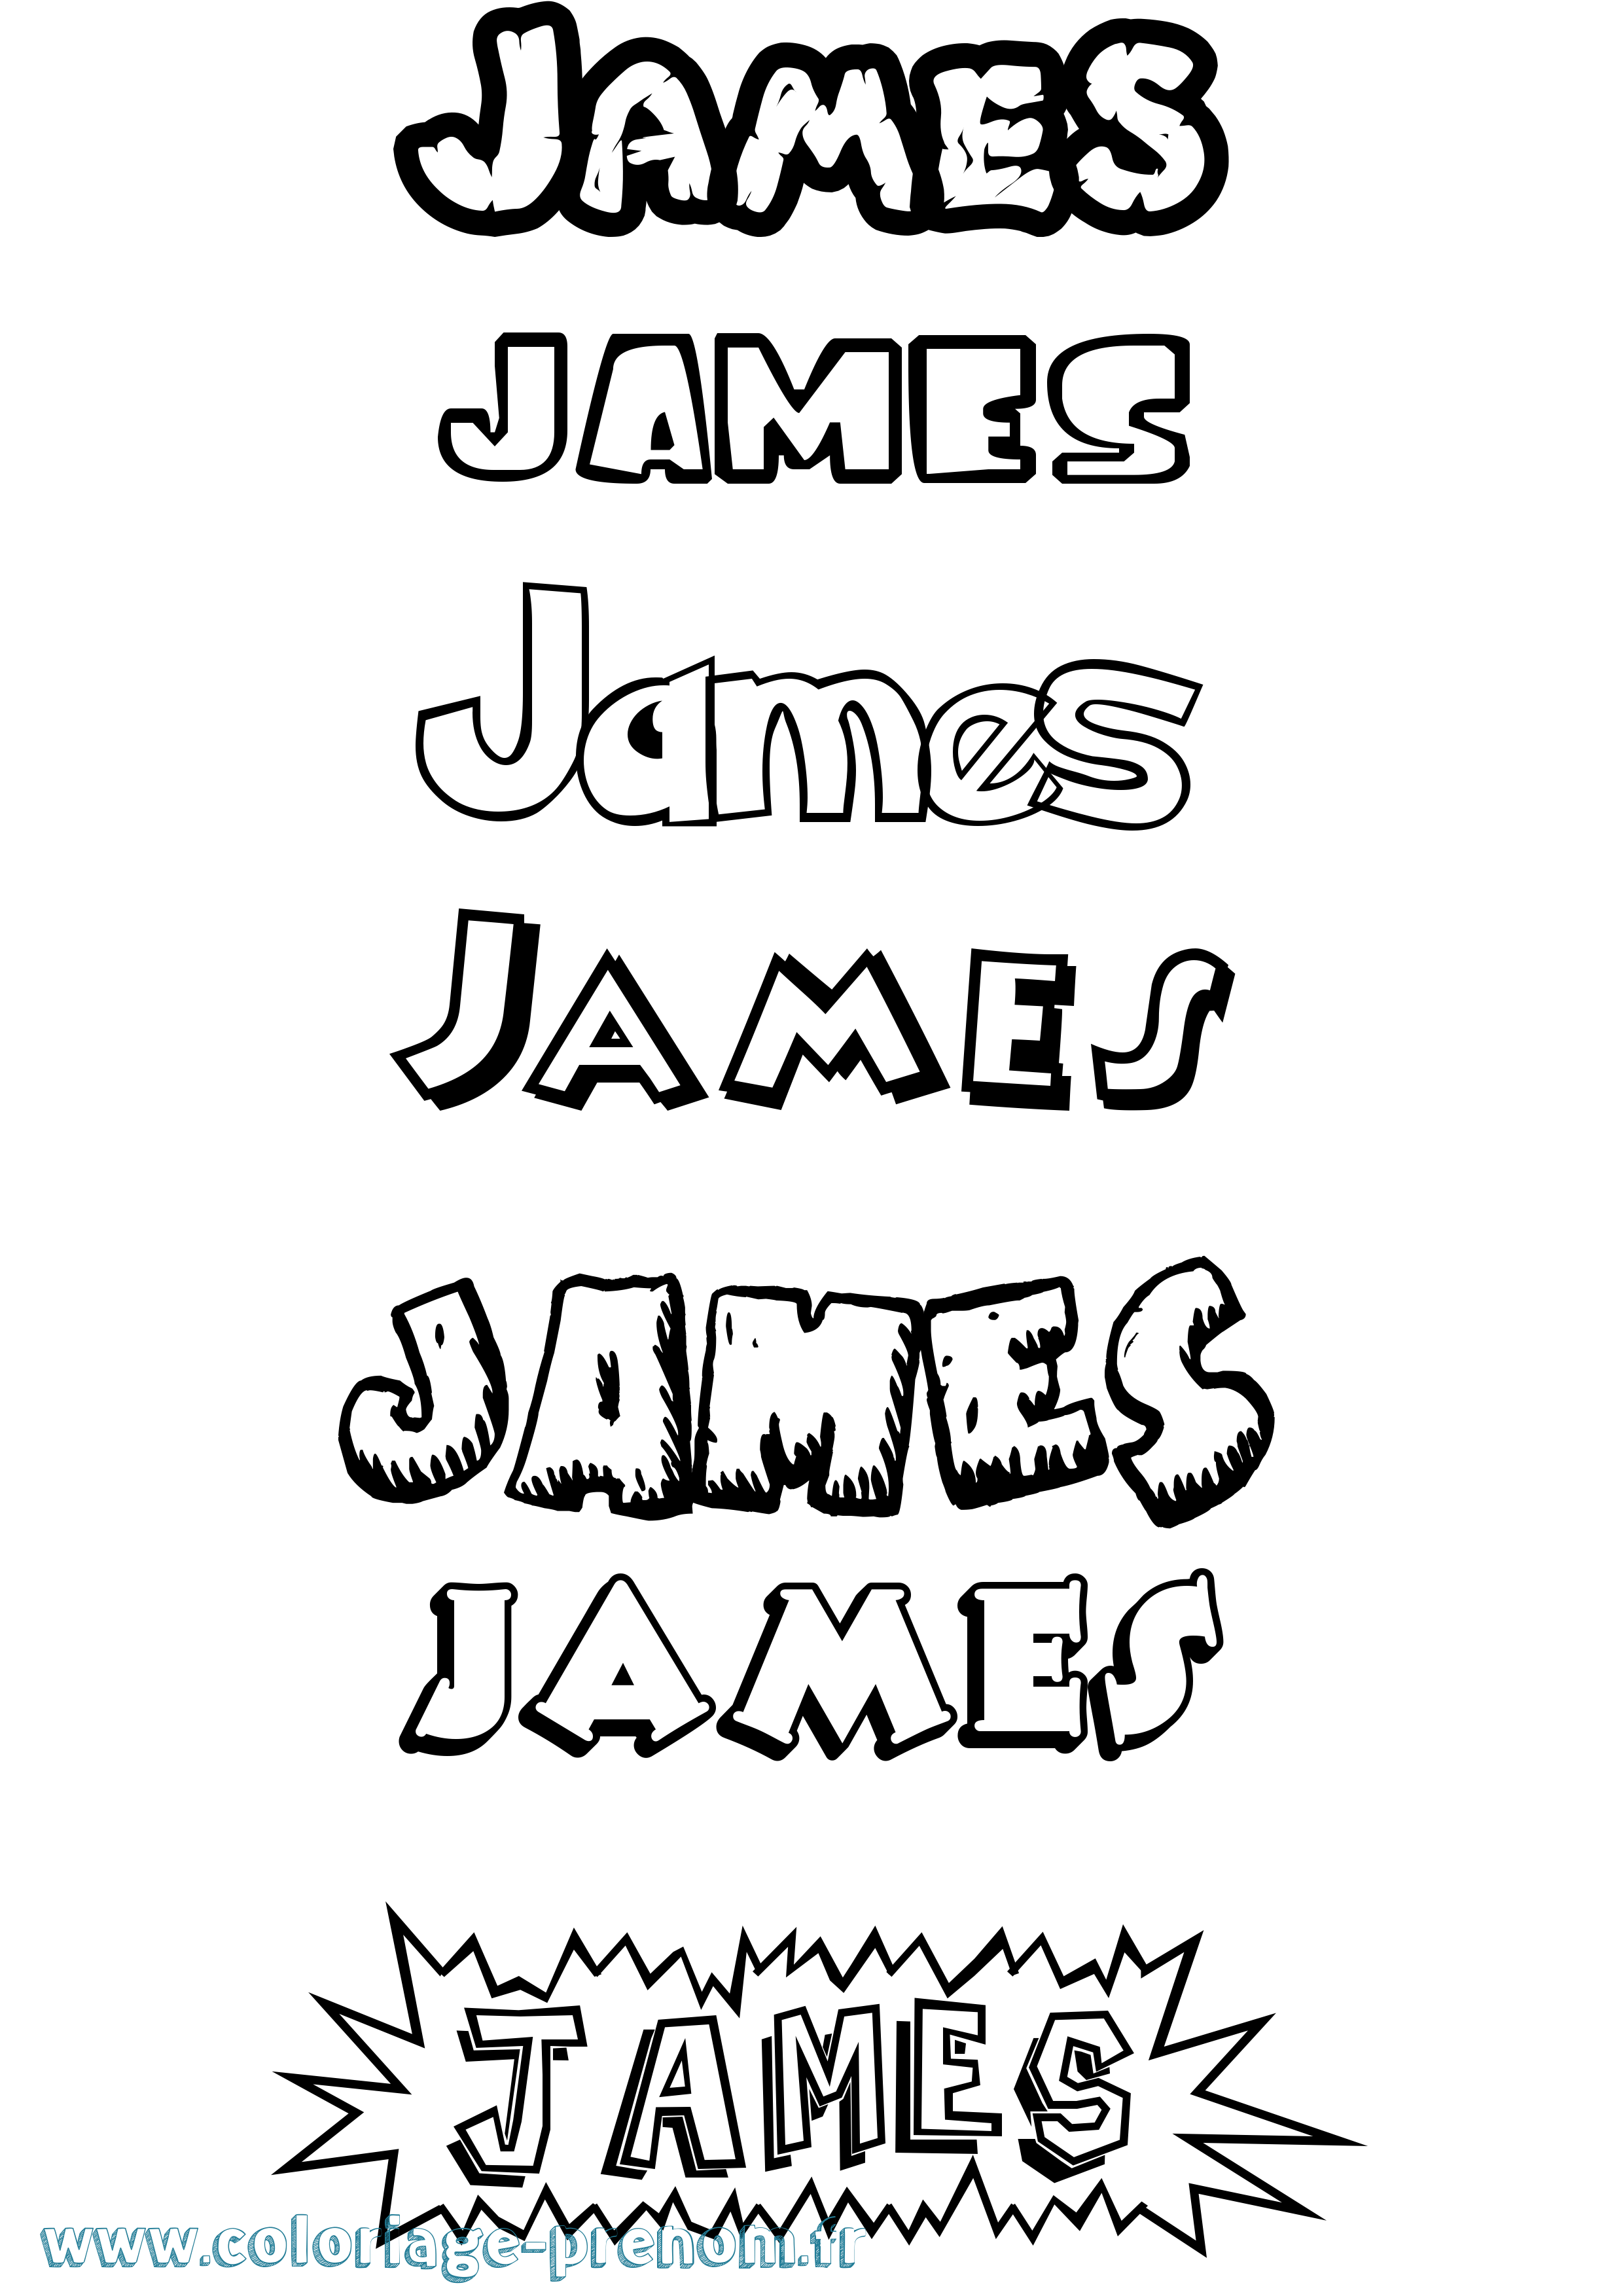 Coloriage prénom James